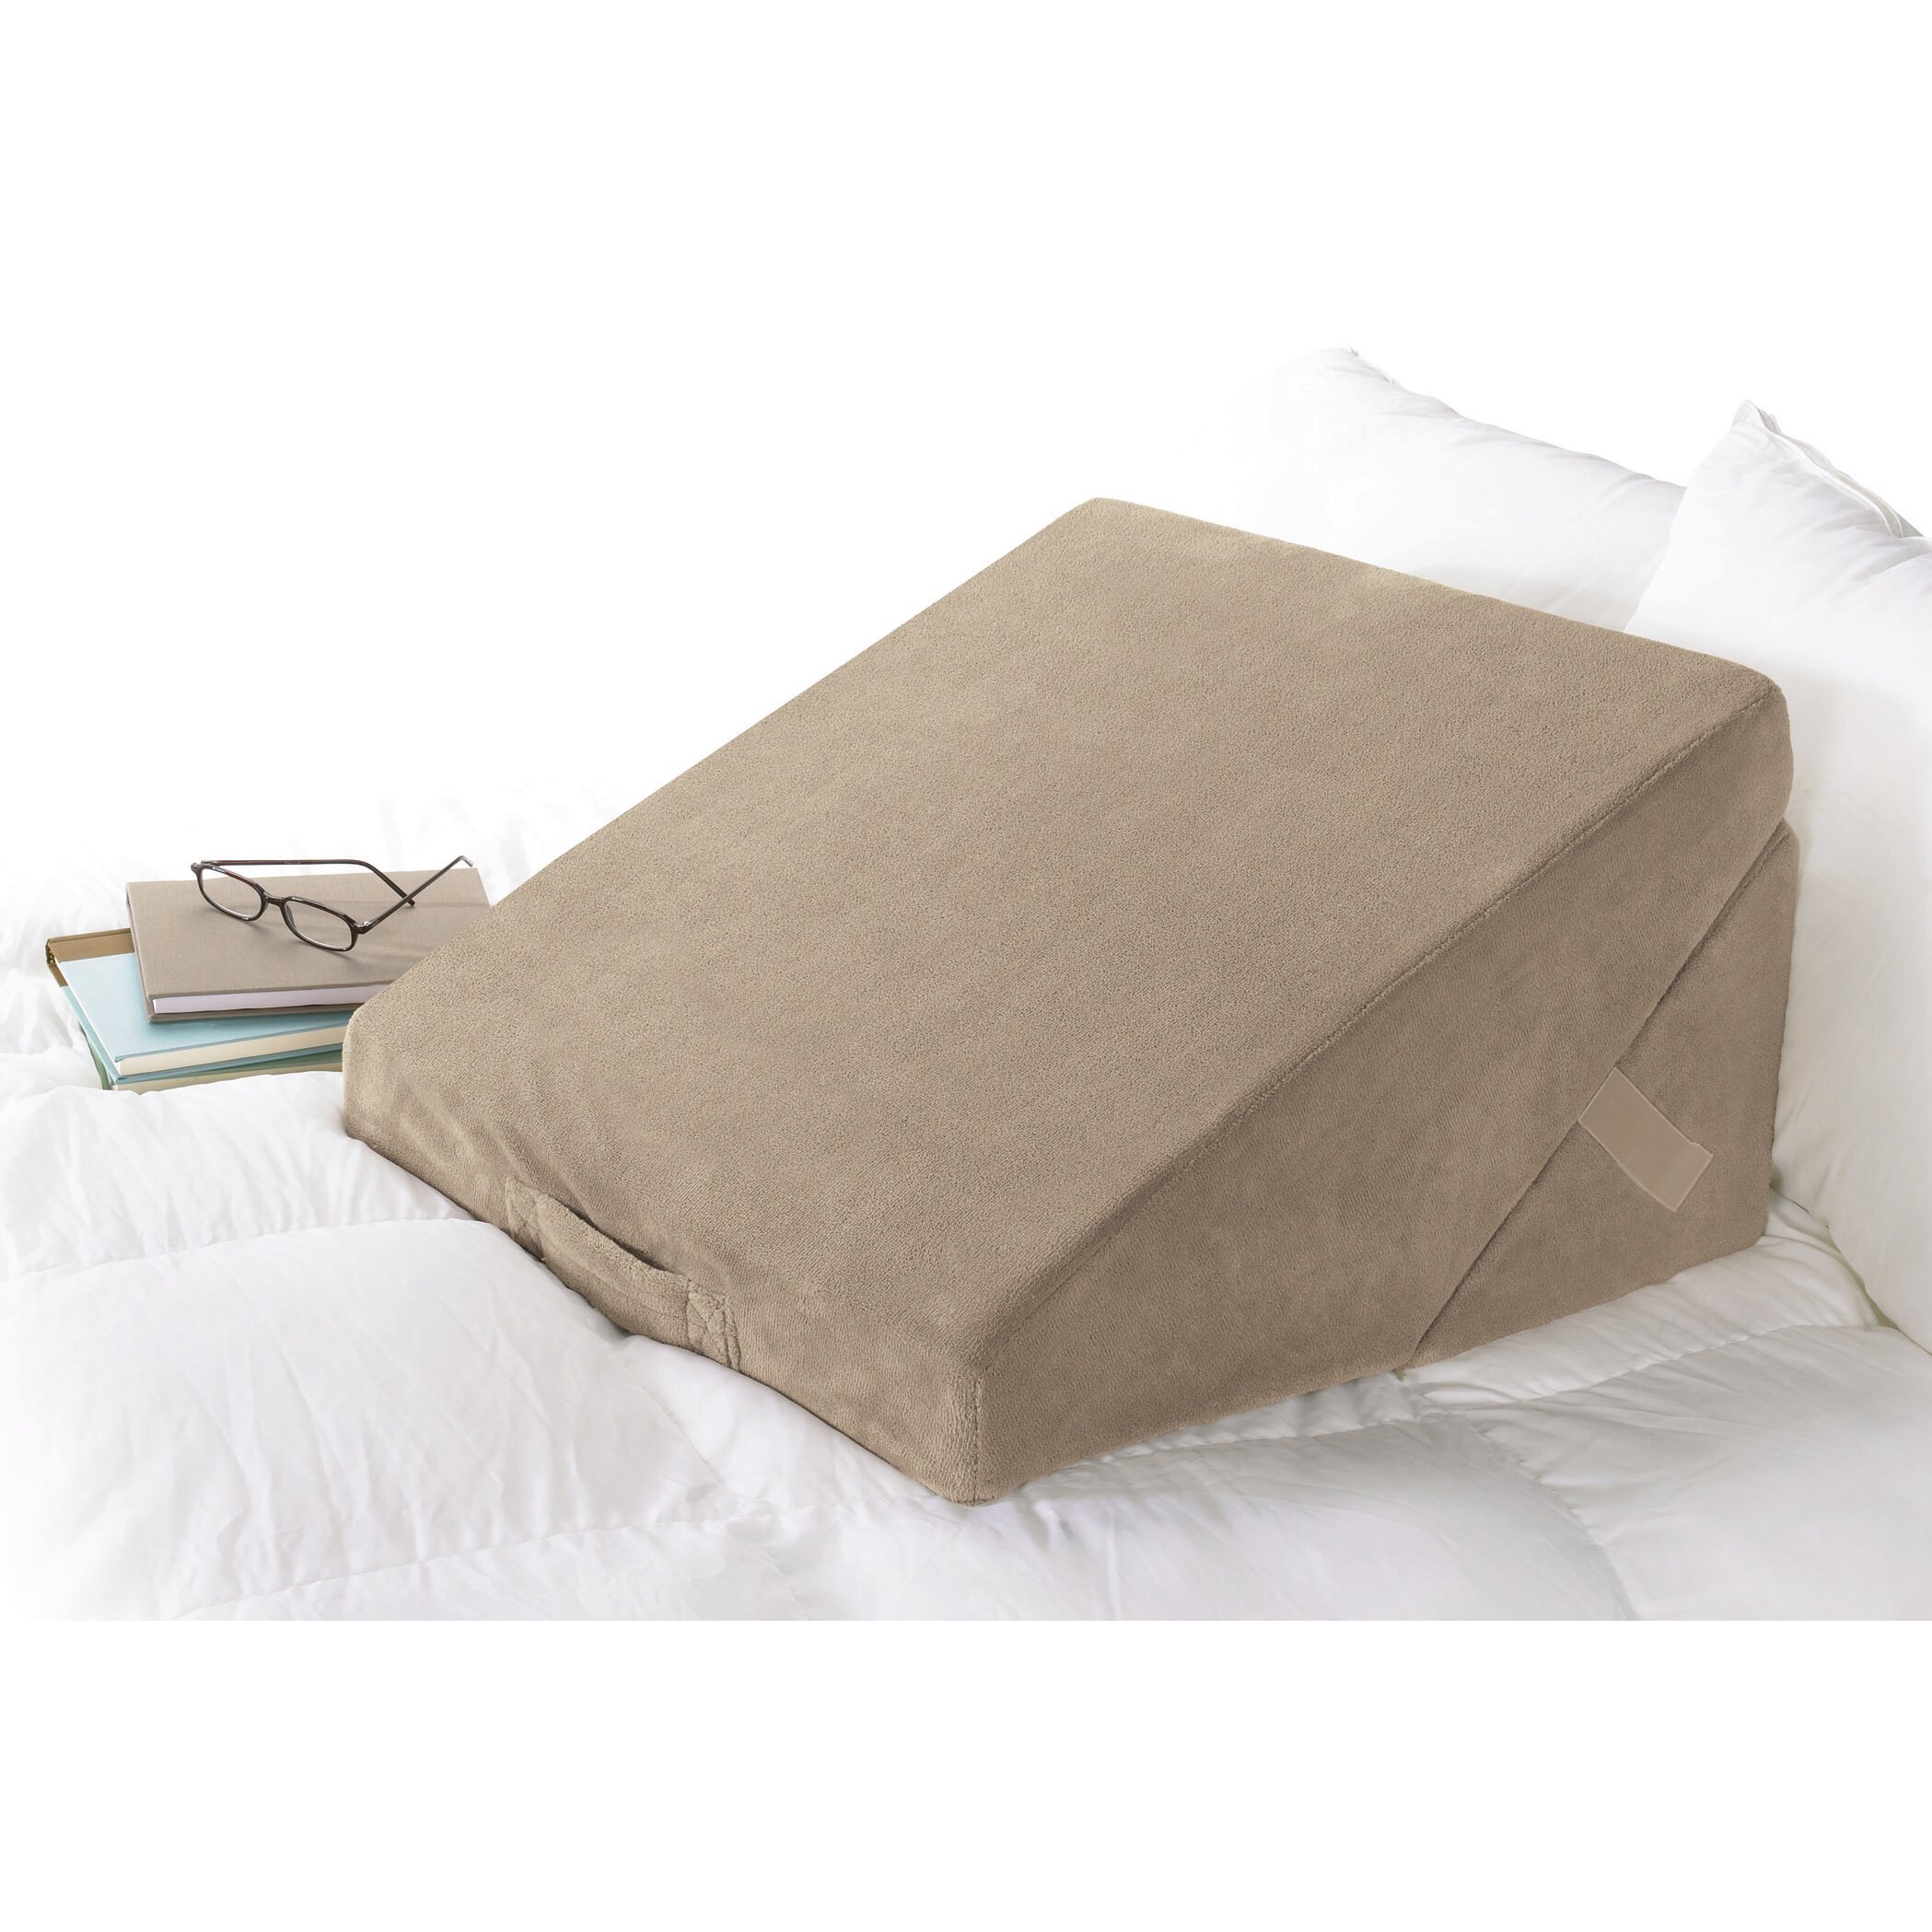 Купить подушку для кровати